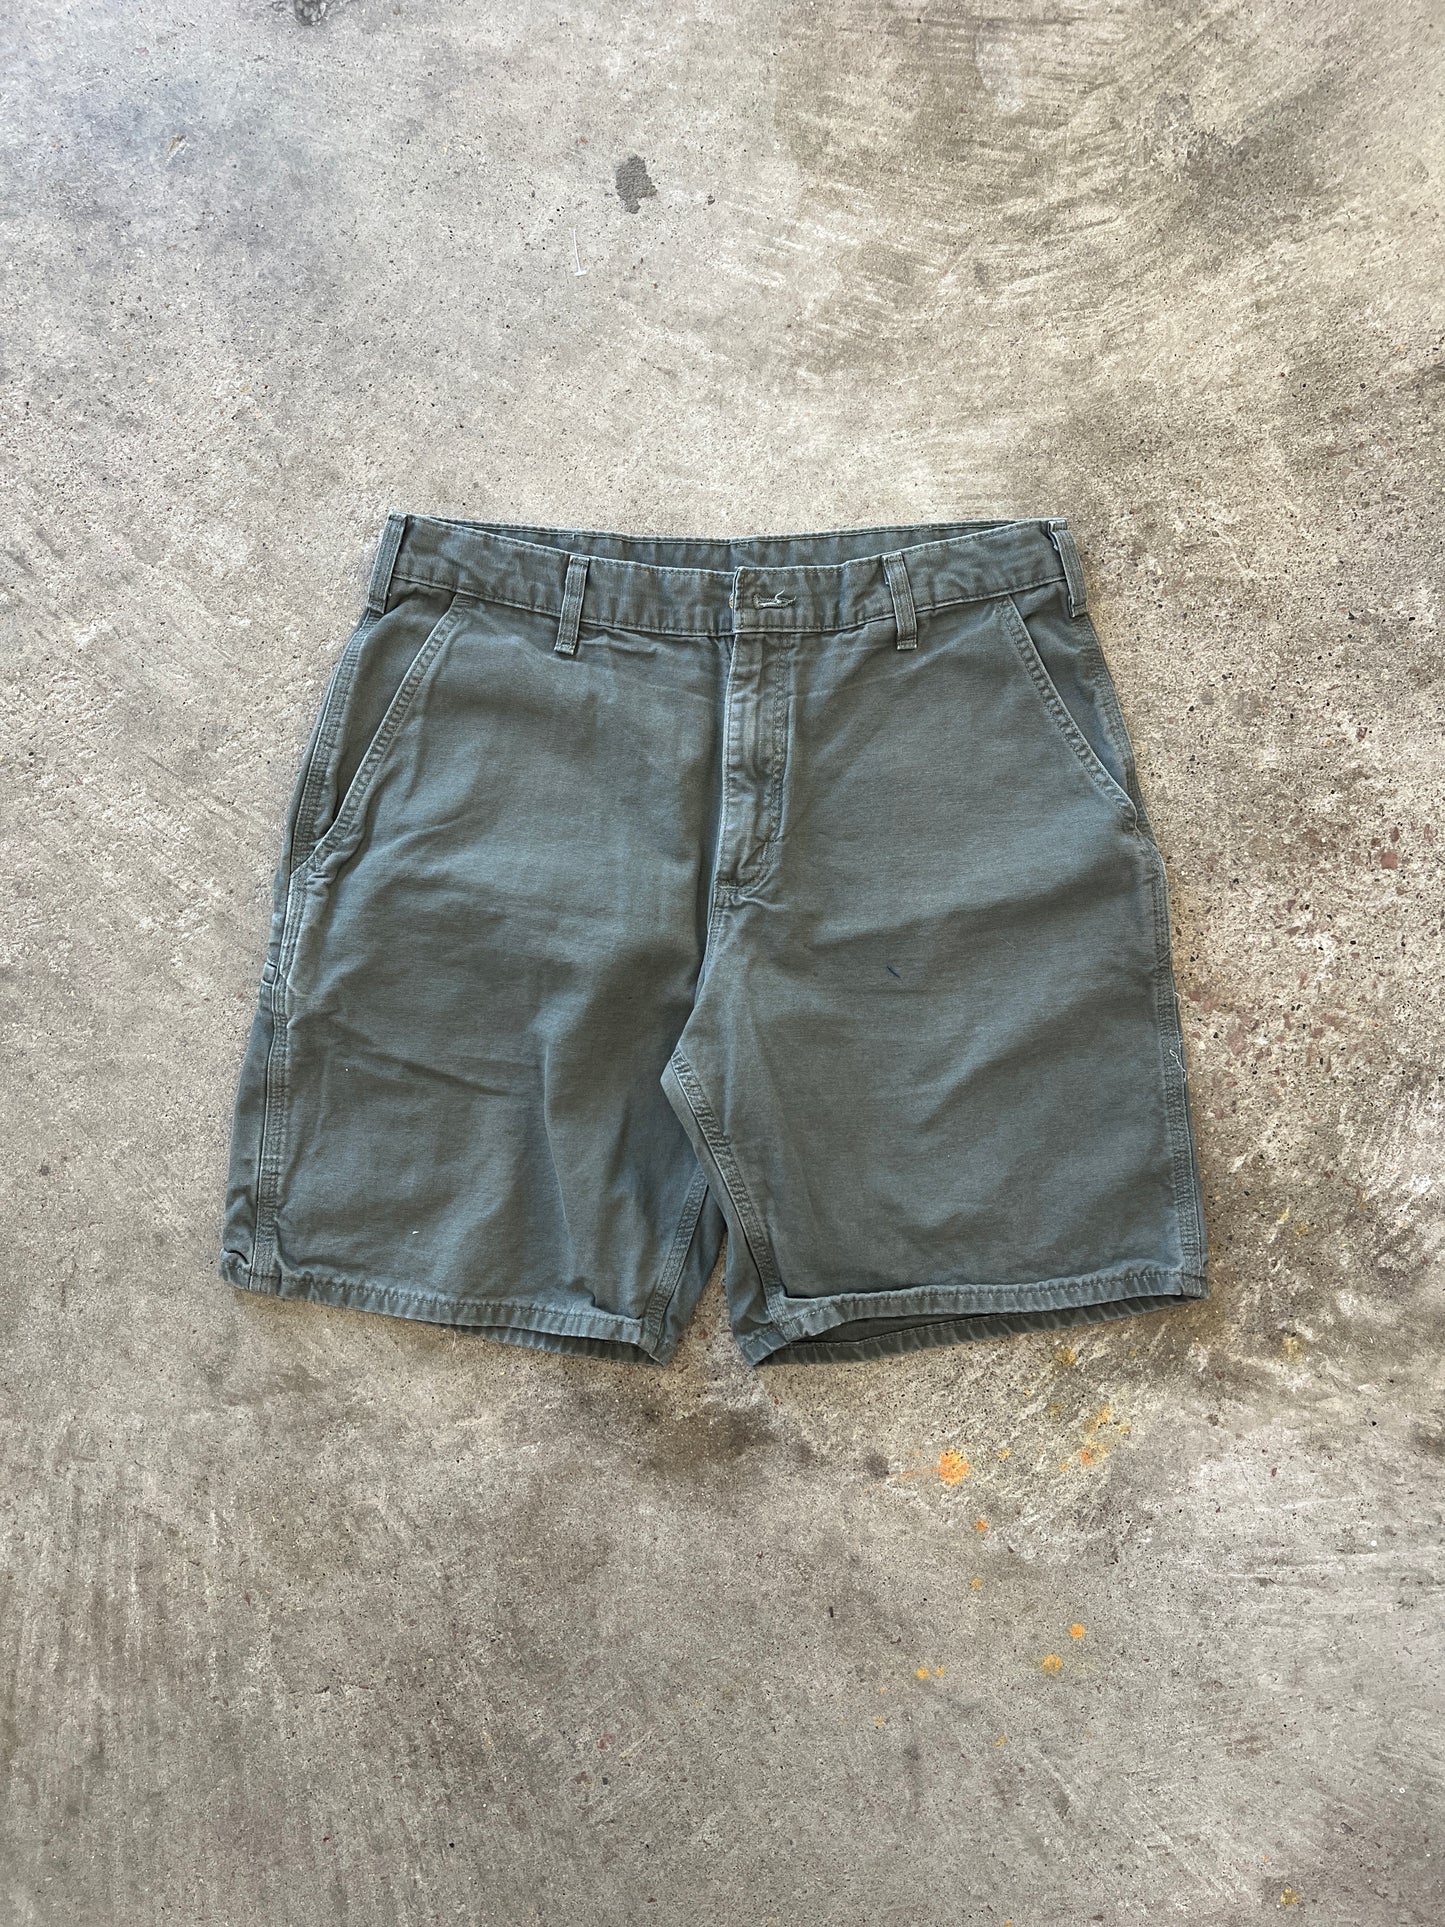 Vintage Green Carhartt Shorts - 36